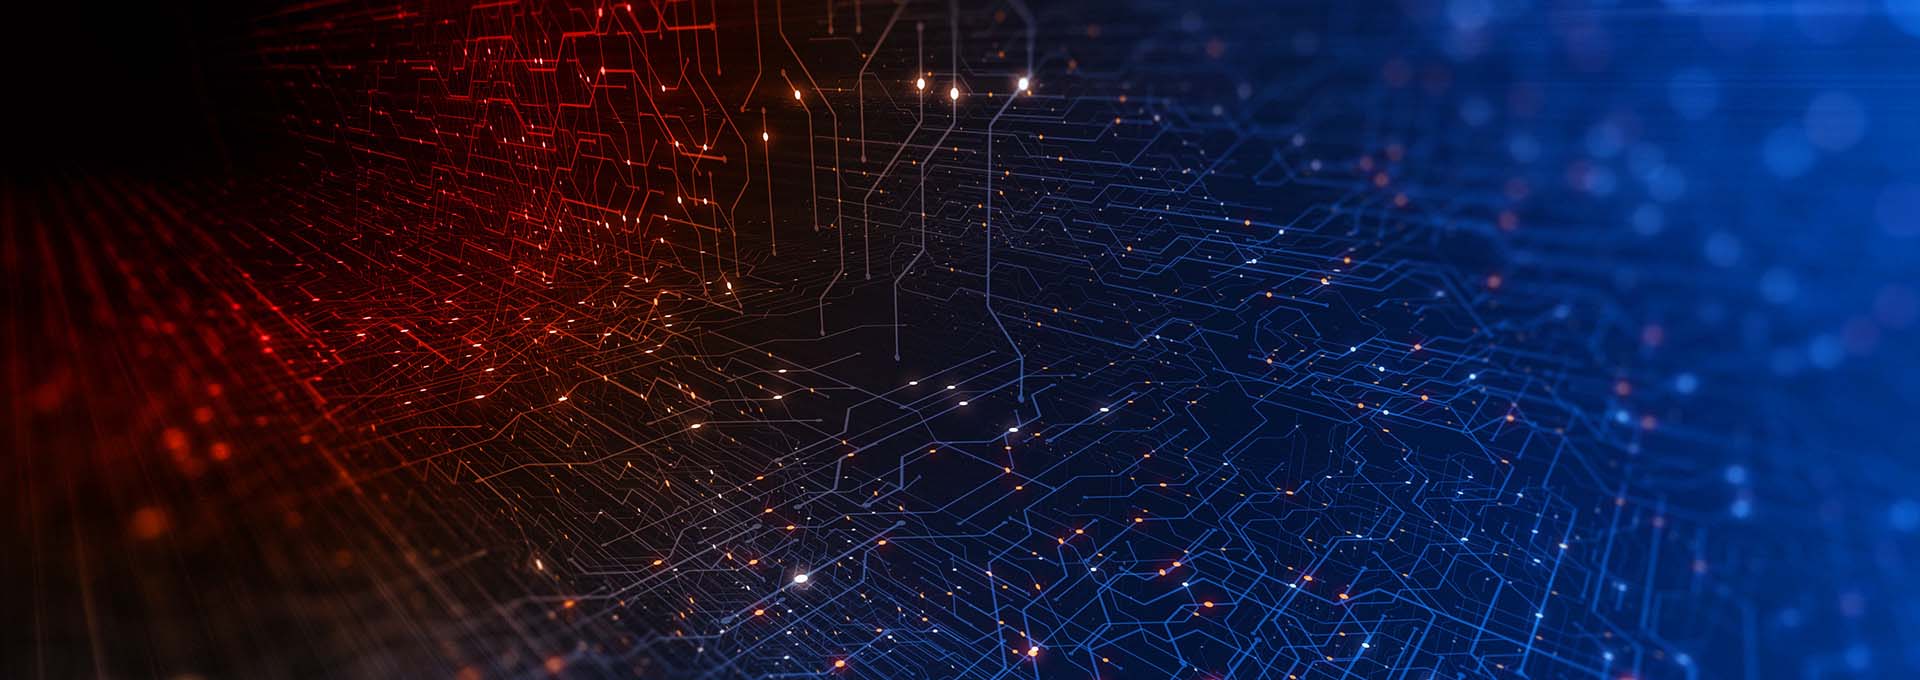 Ein aus Punkten verbundenes Netzwerk in rot und blau erleuchtet, das die digitale Welt unserer Oasis Next Anpasssoftware darstellt.